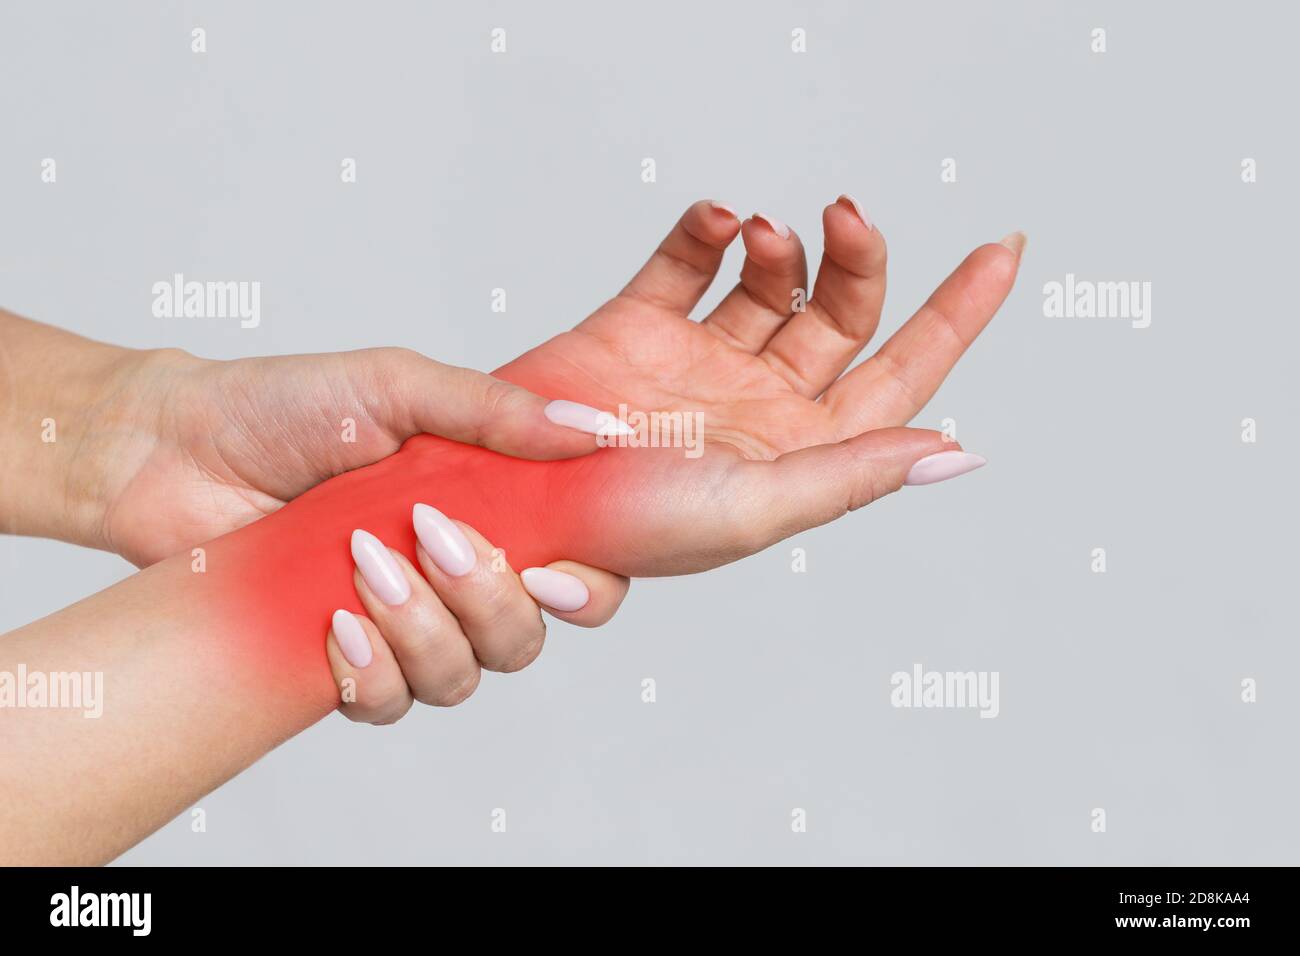 Le braccia femminili che tengono il polso doloroso causato da un lavoro prolungato sul computer, il laptop, di colore rosso. Sindrome del tunnel carpale, artrite, neurologico Foto Stock